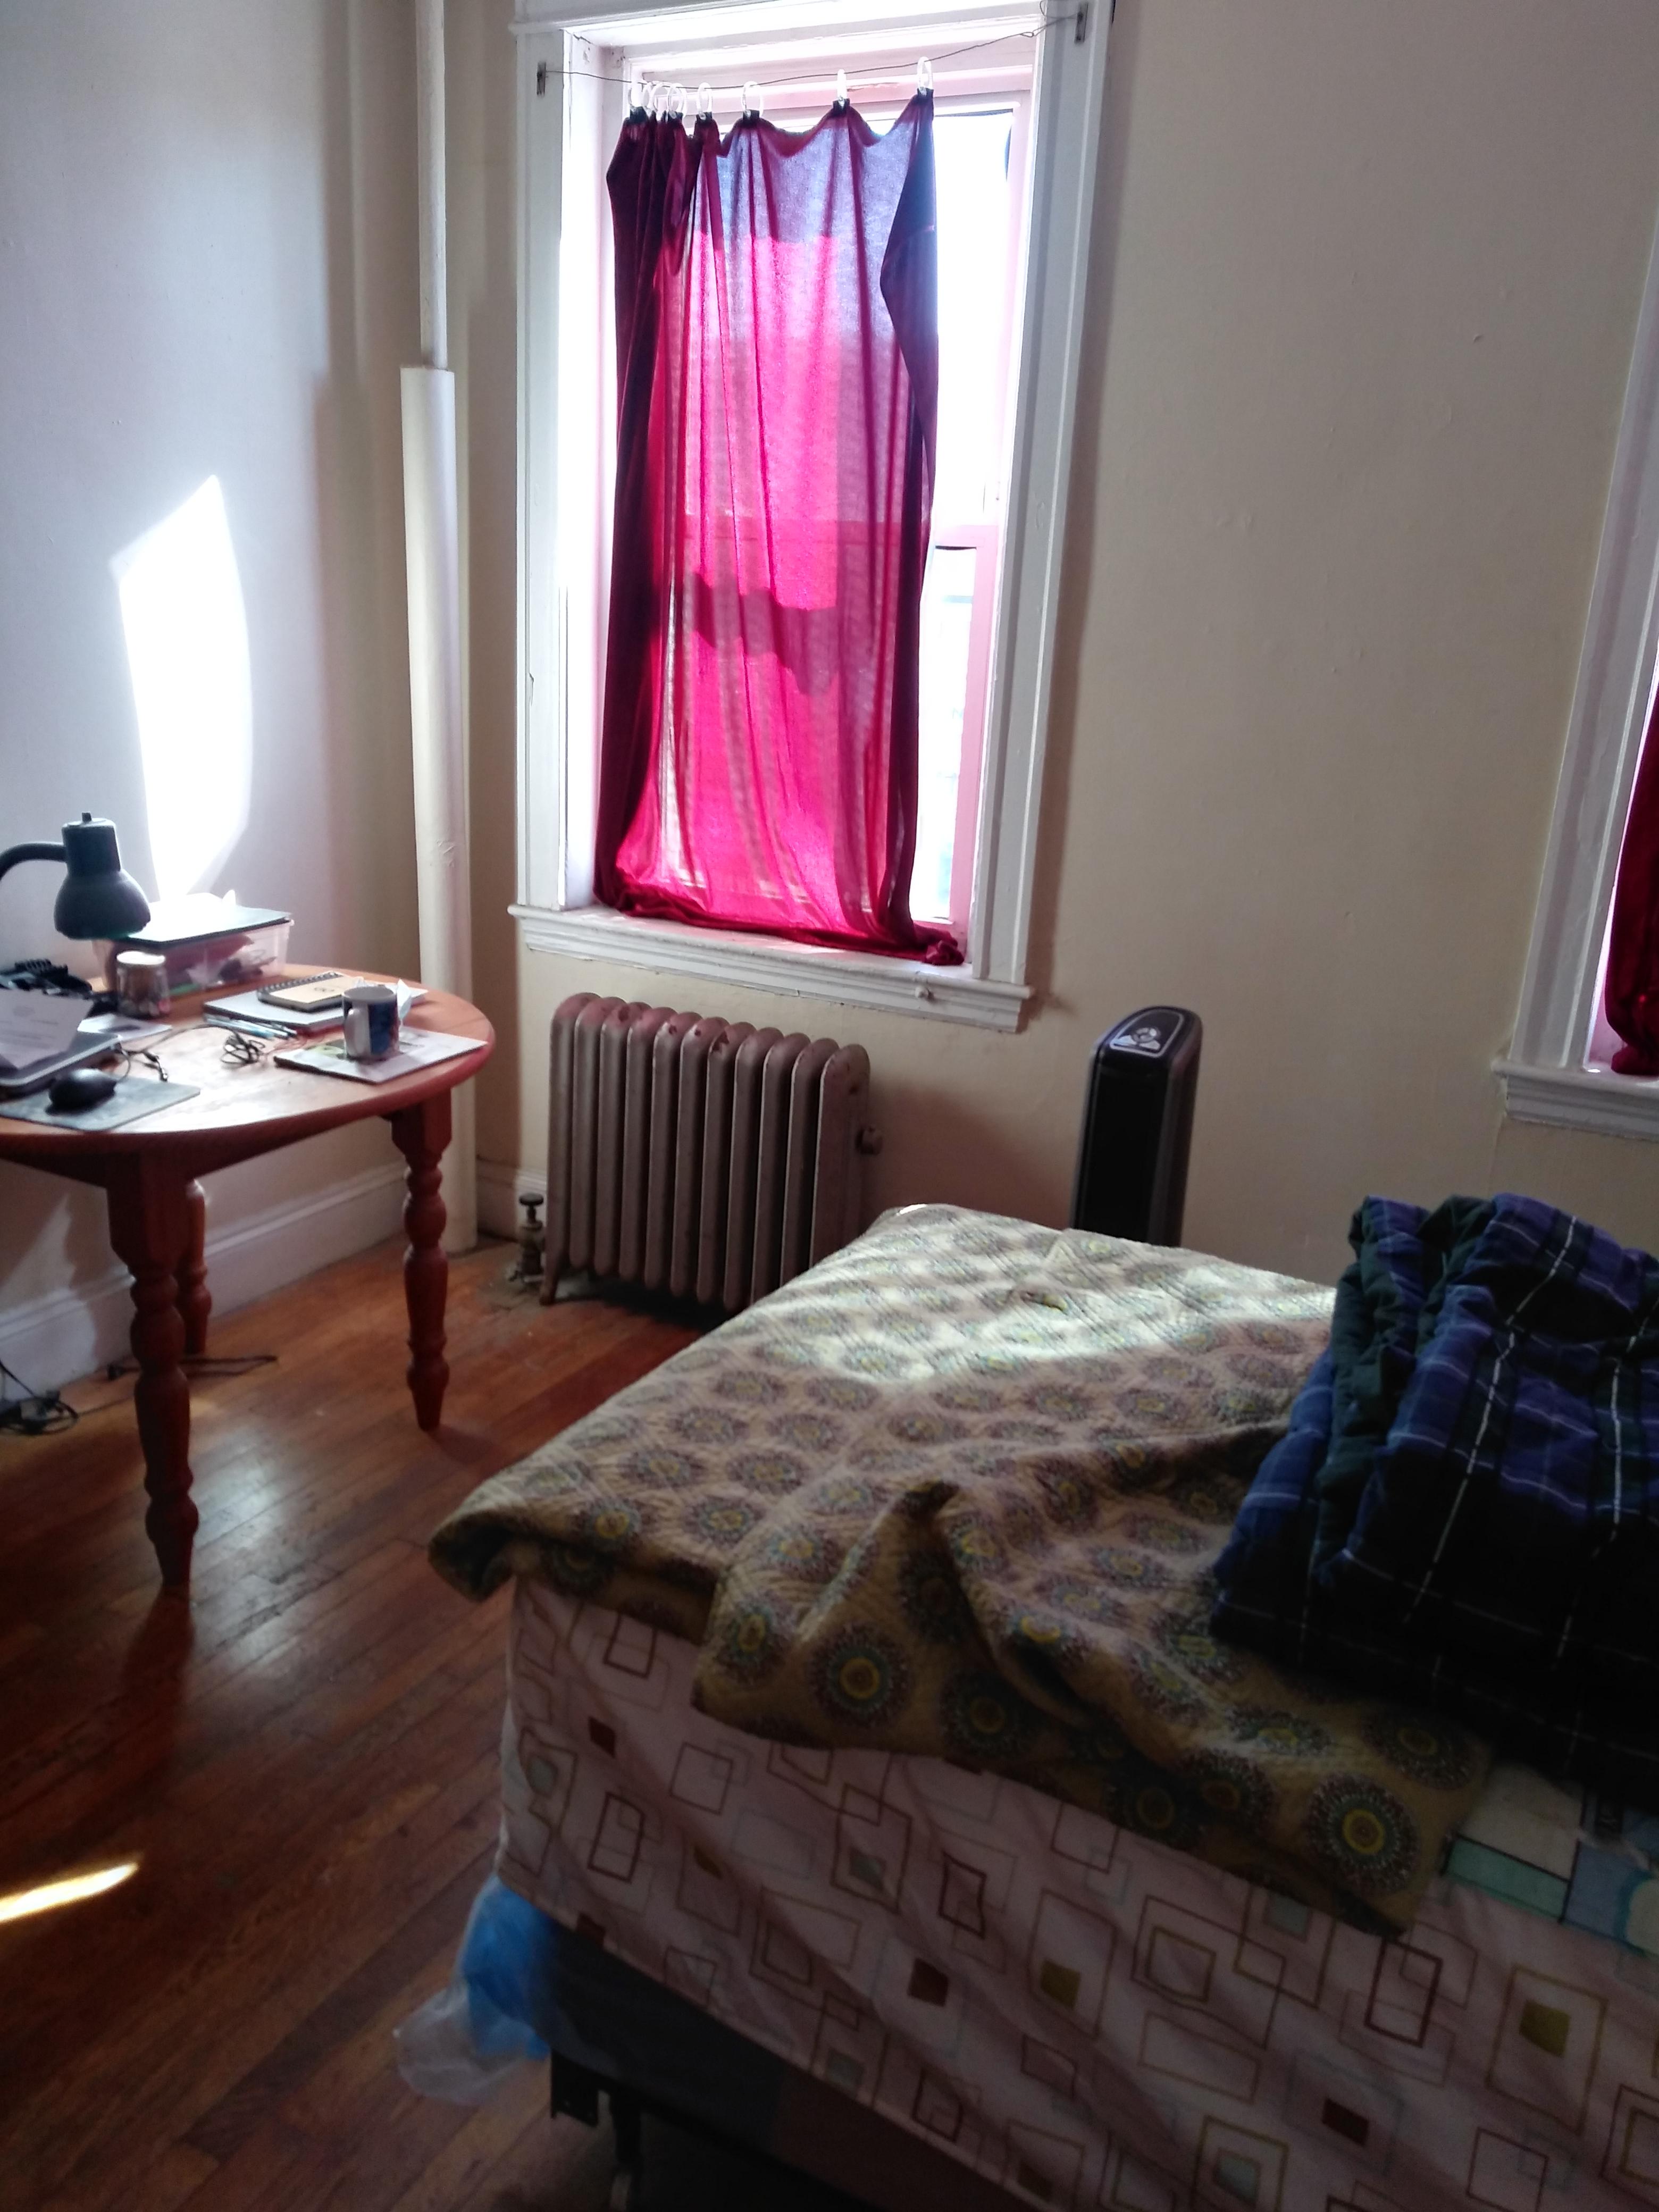 Studio, 1 Bath apartment in Boston, Allston for $1,950